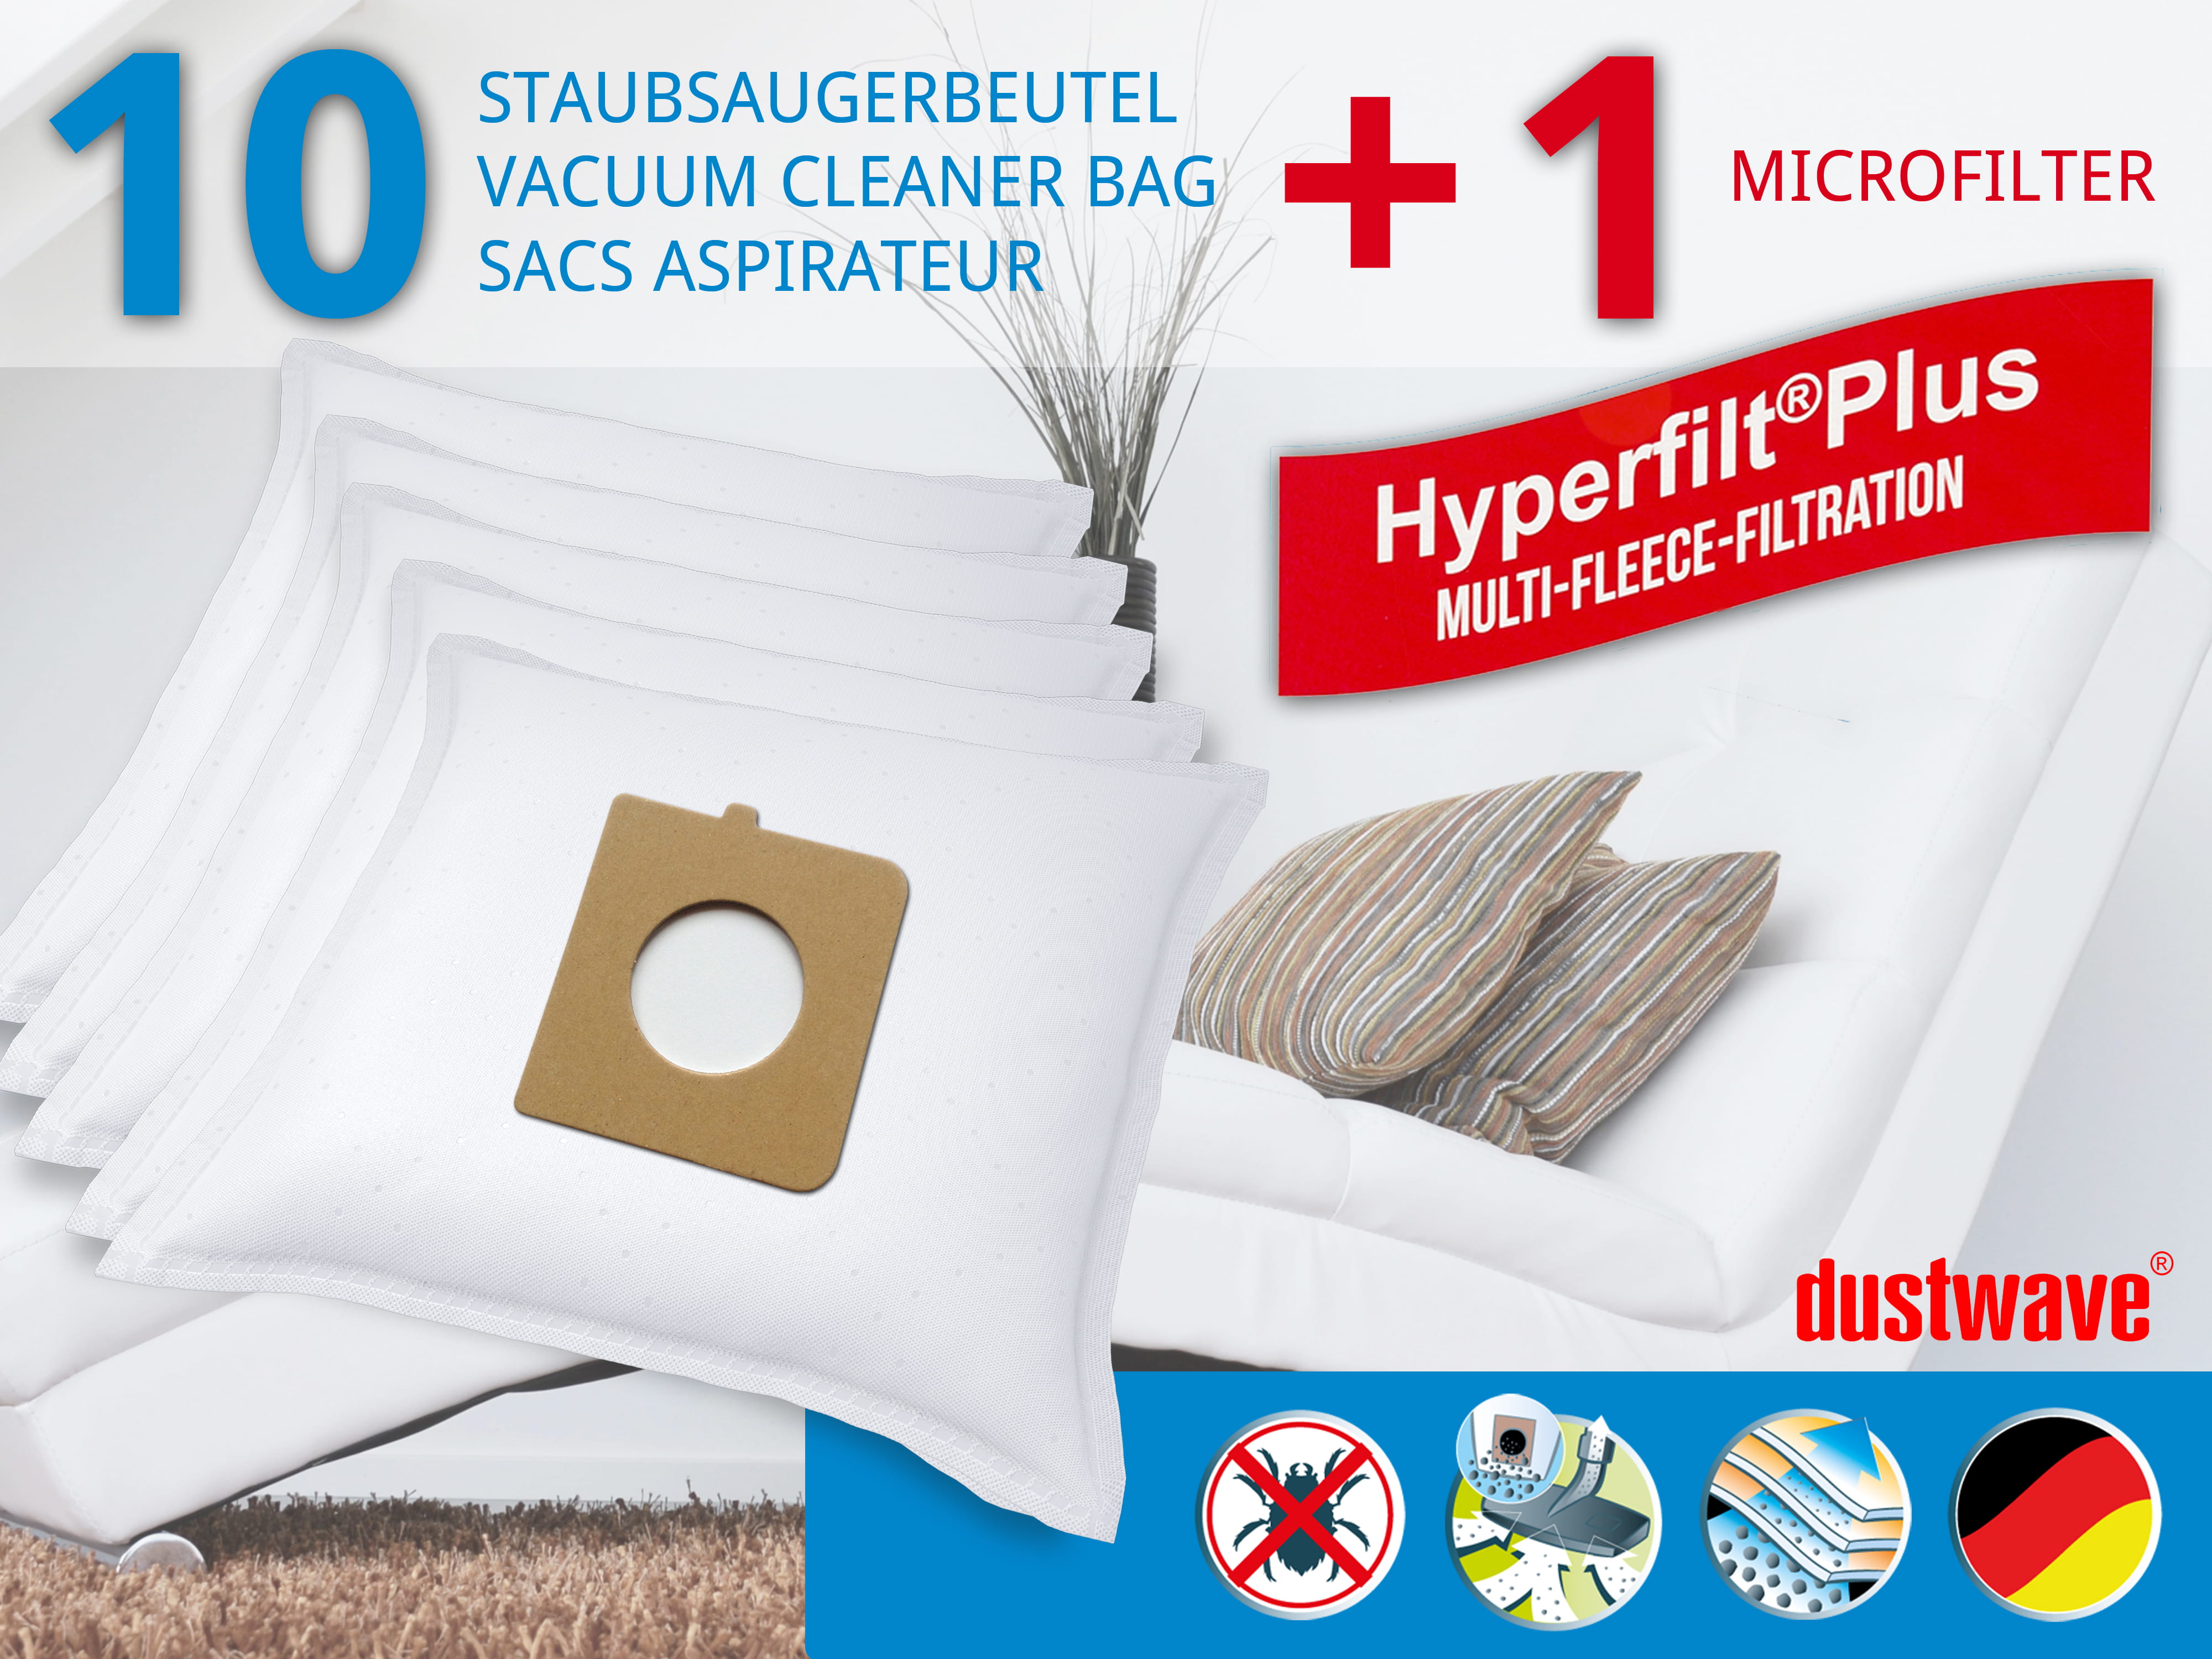 Dustwave® 10 Staubsaugerbeutel für Blue Sky AP 1300 - hocheffizient, mehrlagiges Mikrovlies mit Hygieneverschluss - Made in Germany